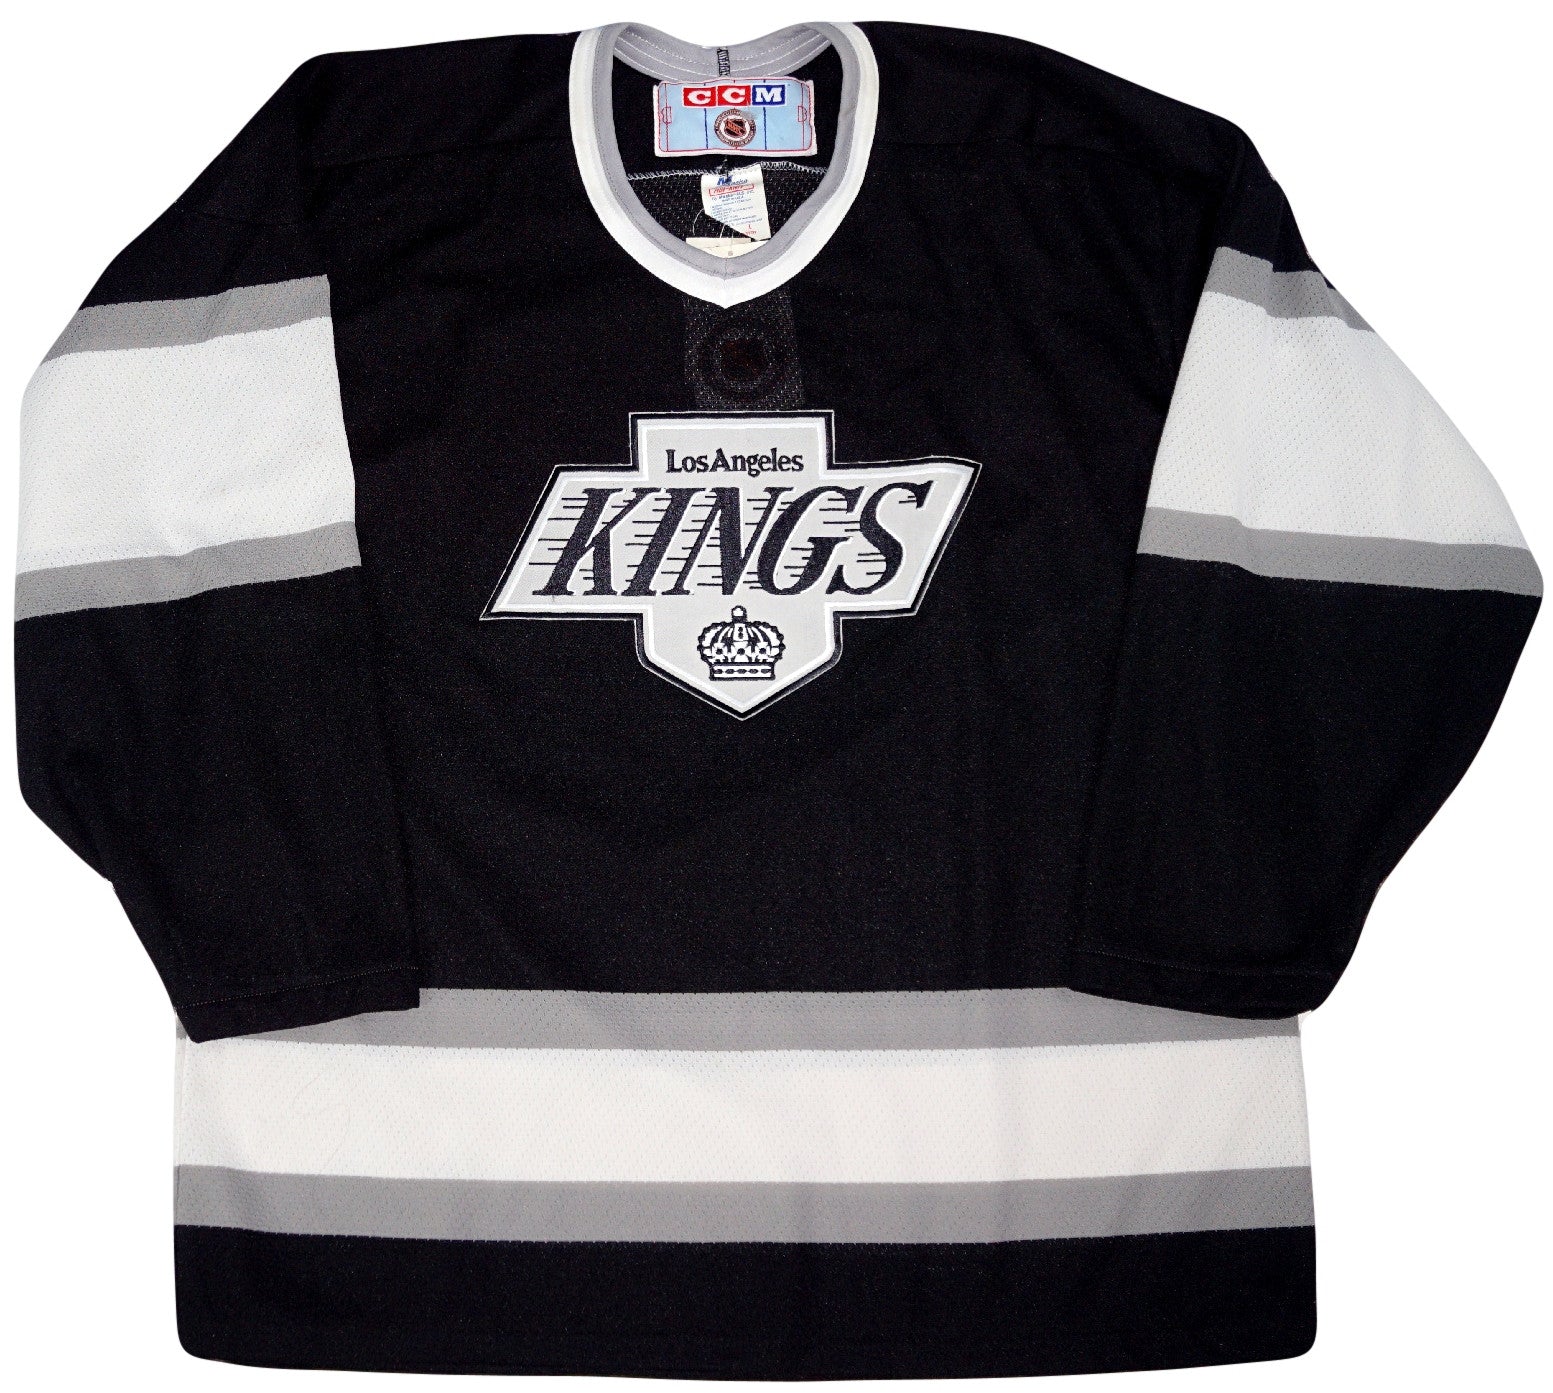 90s kings jersey